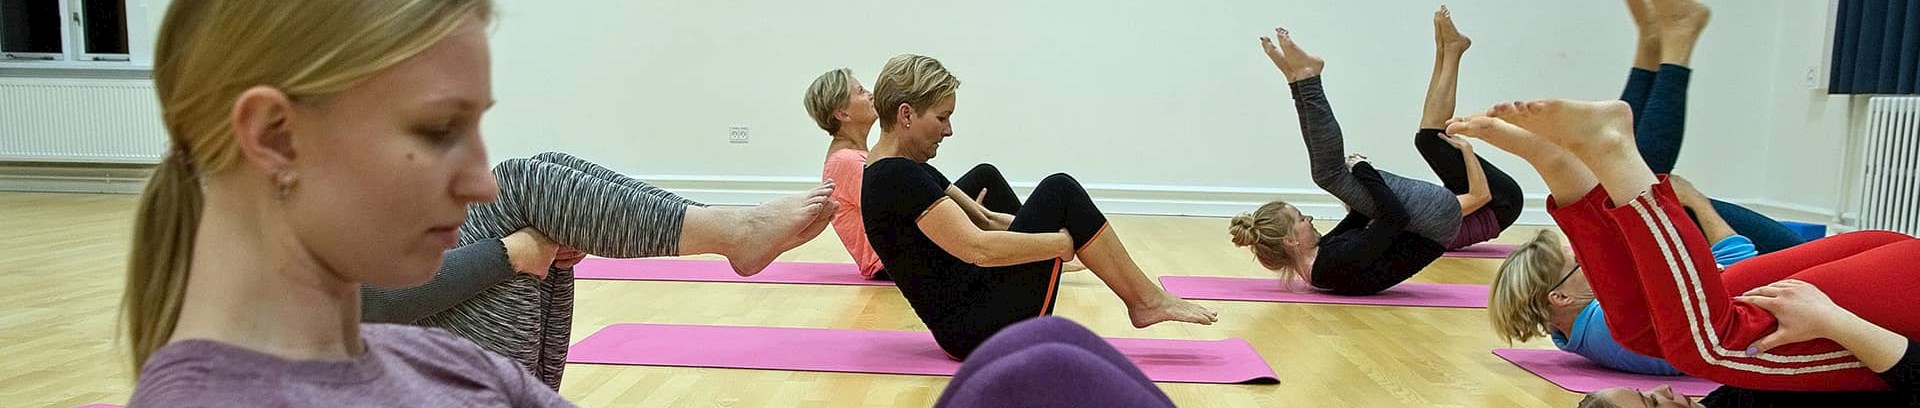 Undervisning i Hathayoga ved FOF Aarhus, underviser yogalærer Anne Margrethe Tolsgaard